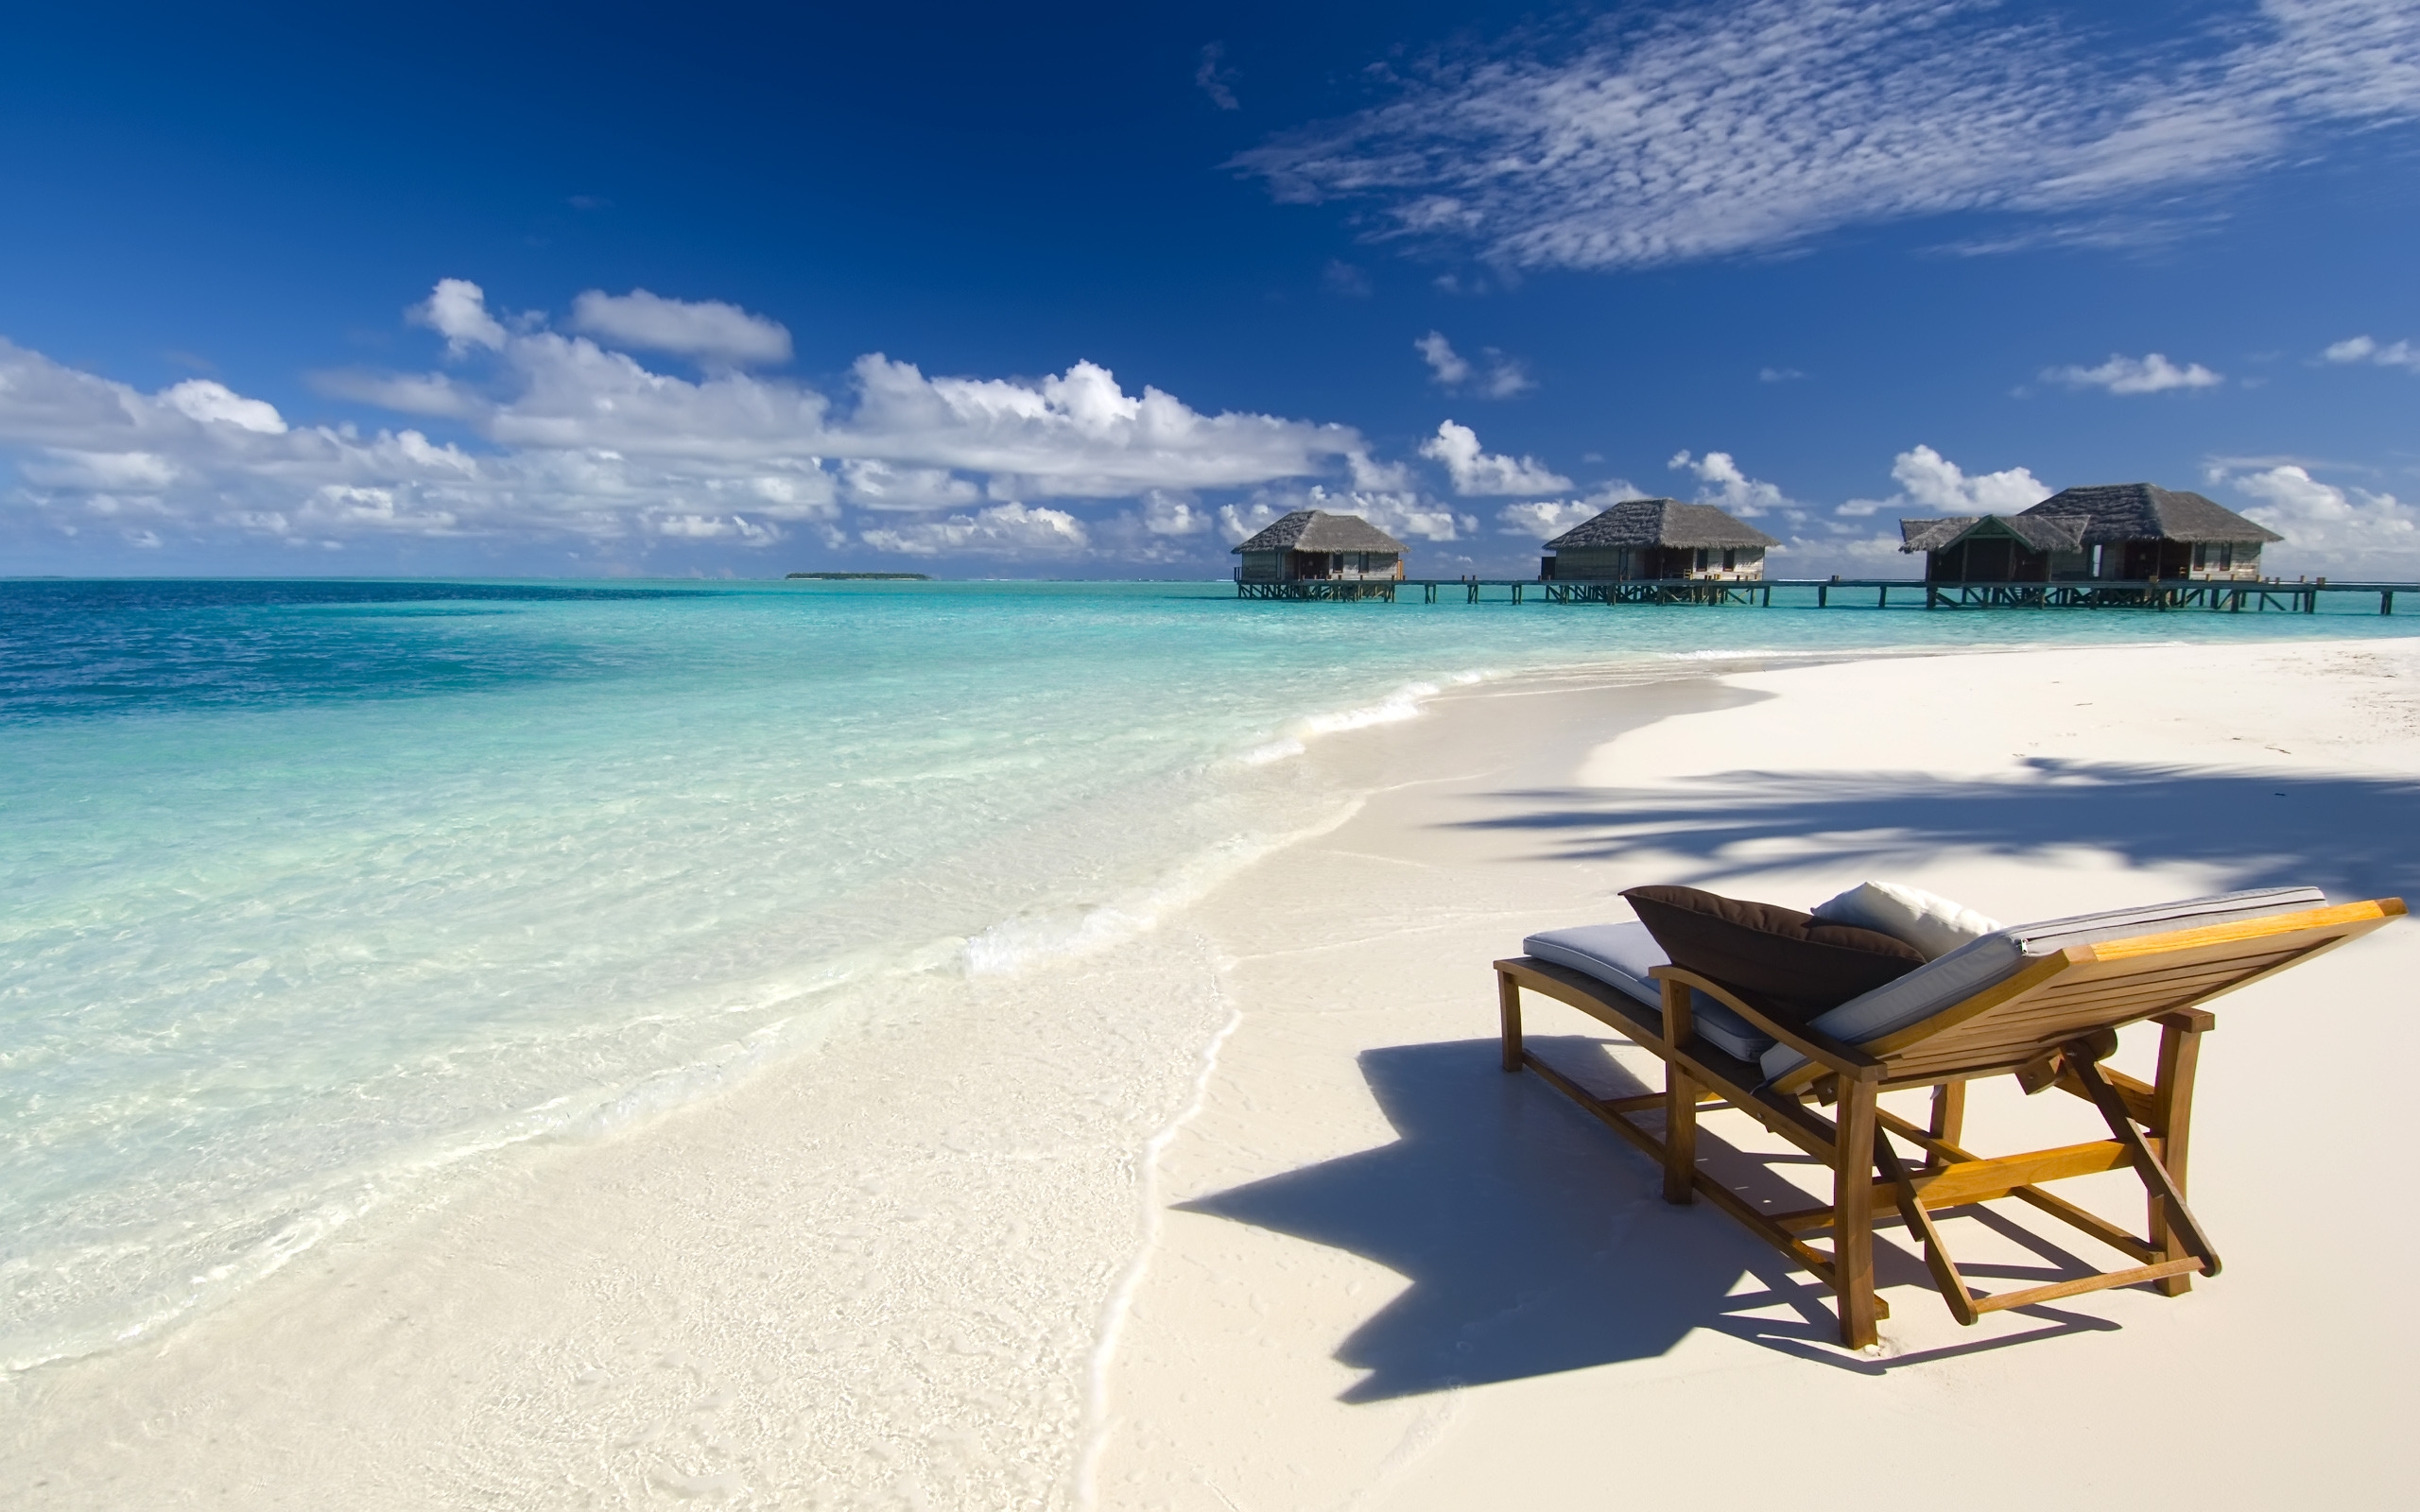 Maldives Conrad Beach for 2560 x 1600 widescreen resolution